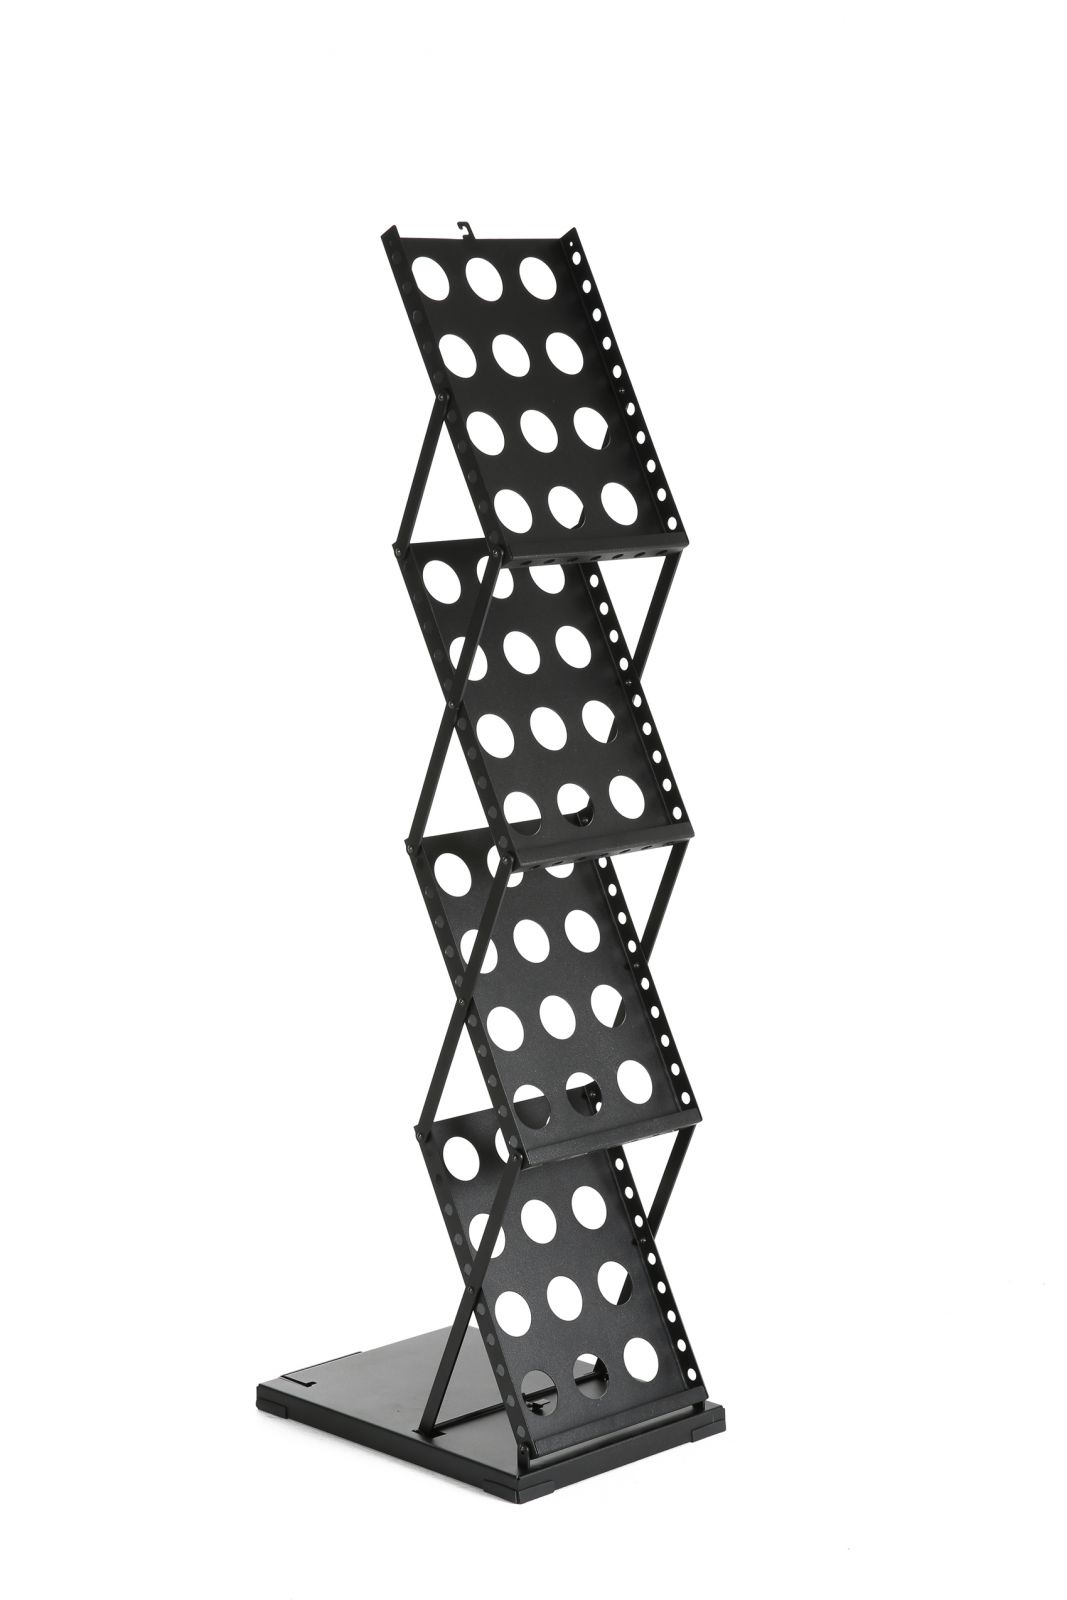 Kovový perforovaný jednostranný stojan na letáky 4x A4 A-Z Reklama CZ